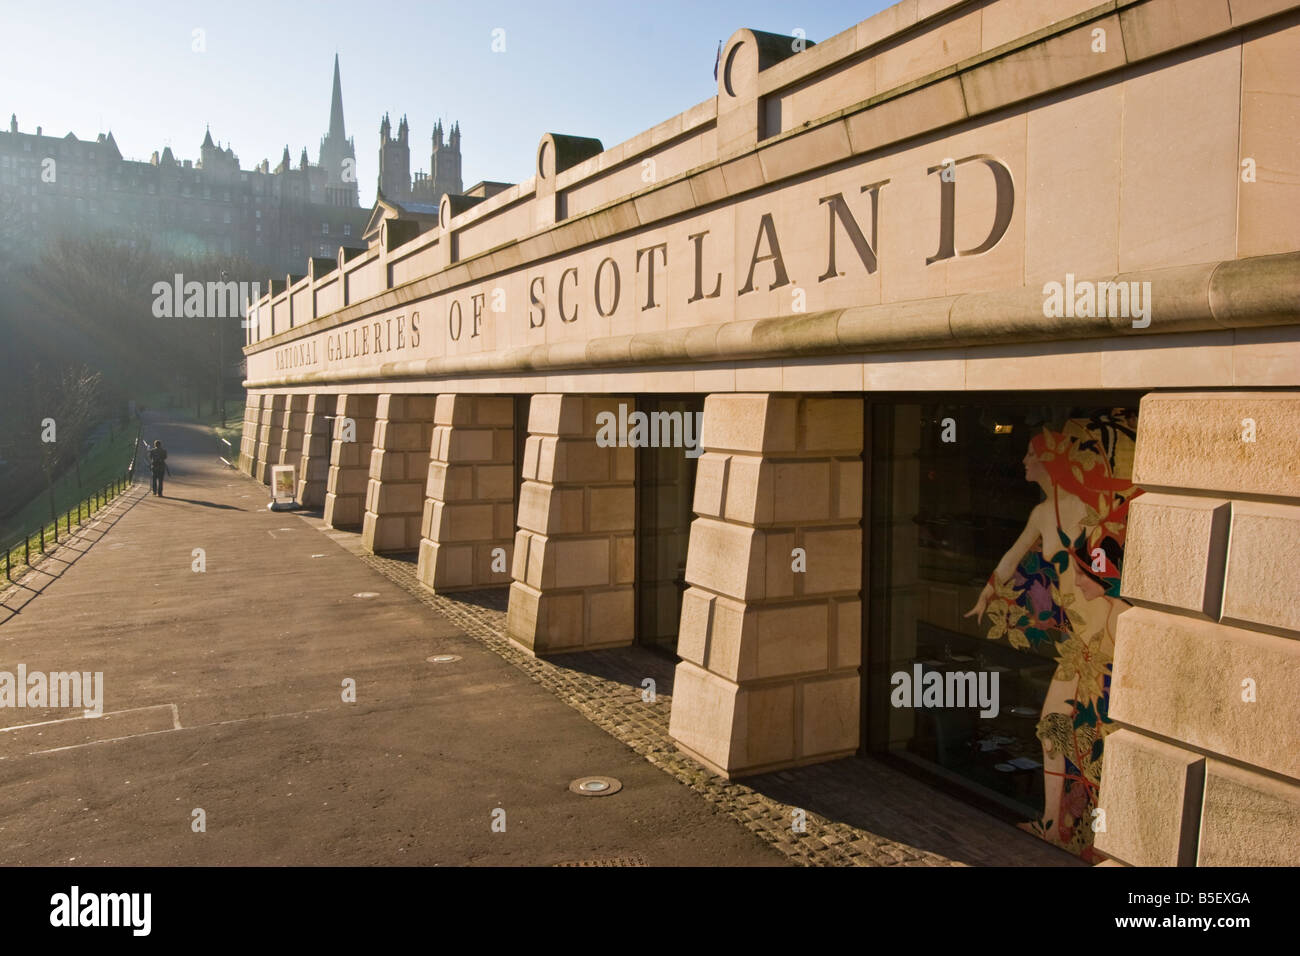 La nuova sezione della Galleria Nazionale di Scozia, a Edimburgo. Questa è la galleria di arte nazionale di Scozia. Un elaborato edificio neoclassico, sorge sulla Montagnola, tra le due sezioni di Edinburgh Princes Street Gardens. L'edificio, che fu progettato da William Henry Playfair, aperta per la prima volta al pubblico nel 1859. Foto Stock